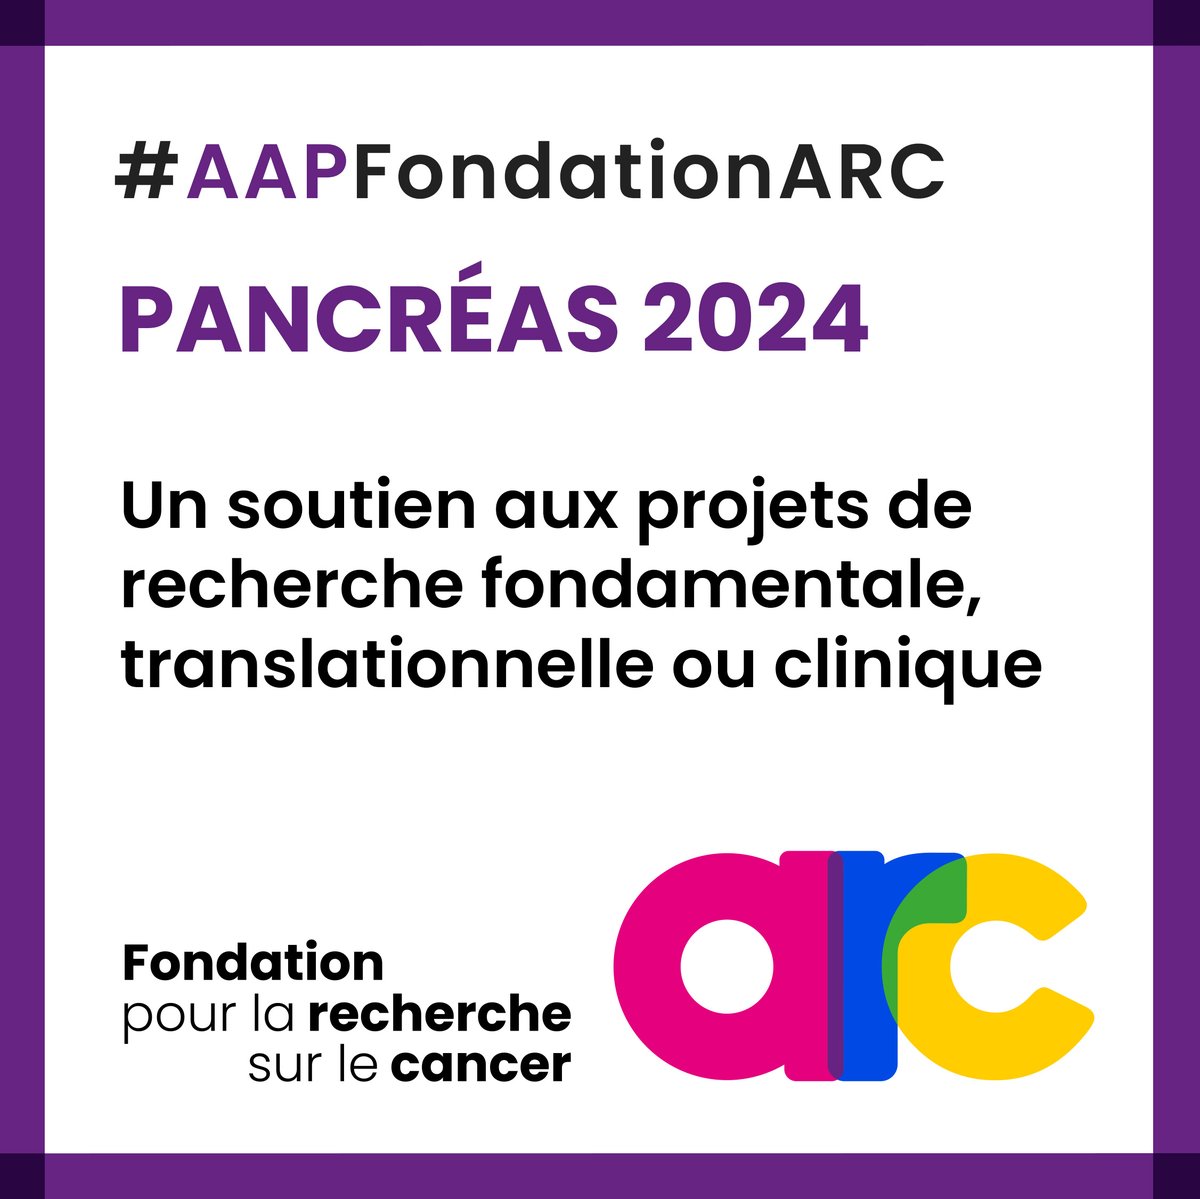 📢L’appel à projets PANCREAS 2024 de la Fondation ARC pour la #Recherche sur le #Cancer est actuellement ouvert ! Vous avez jusqu'au 10 juin pour déposer vos projets et obtenir jusqu’à 1 000 000 € sur 36 à 60 mois ! Pour en savoir plus : fondation-arc.org/aap-pancreas